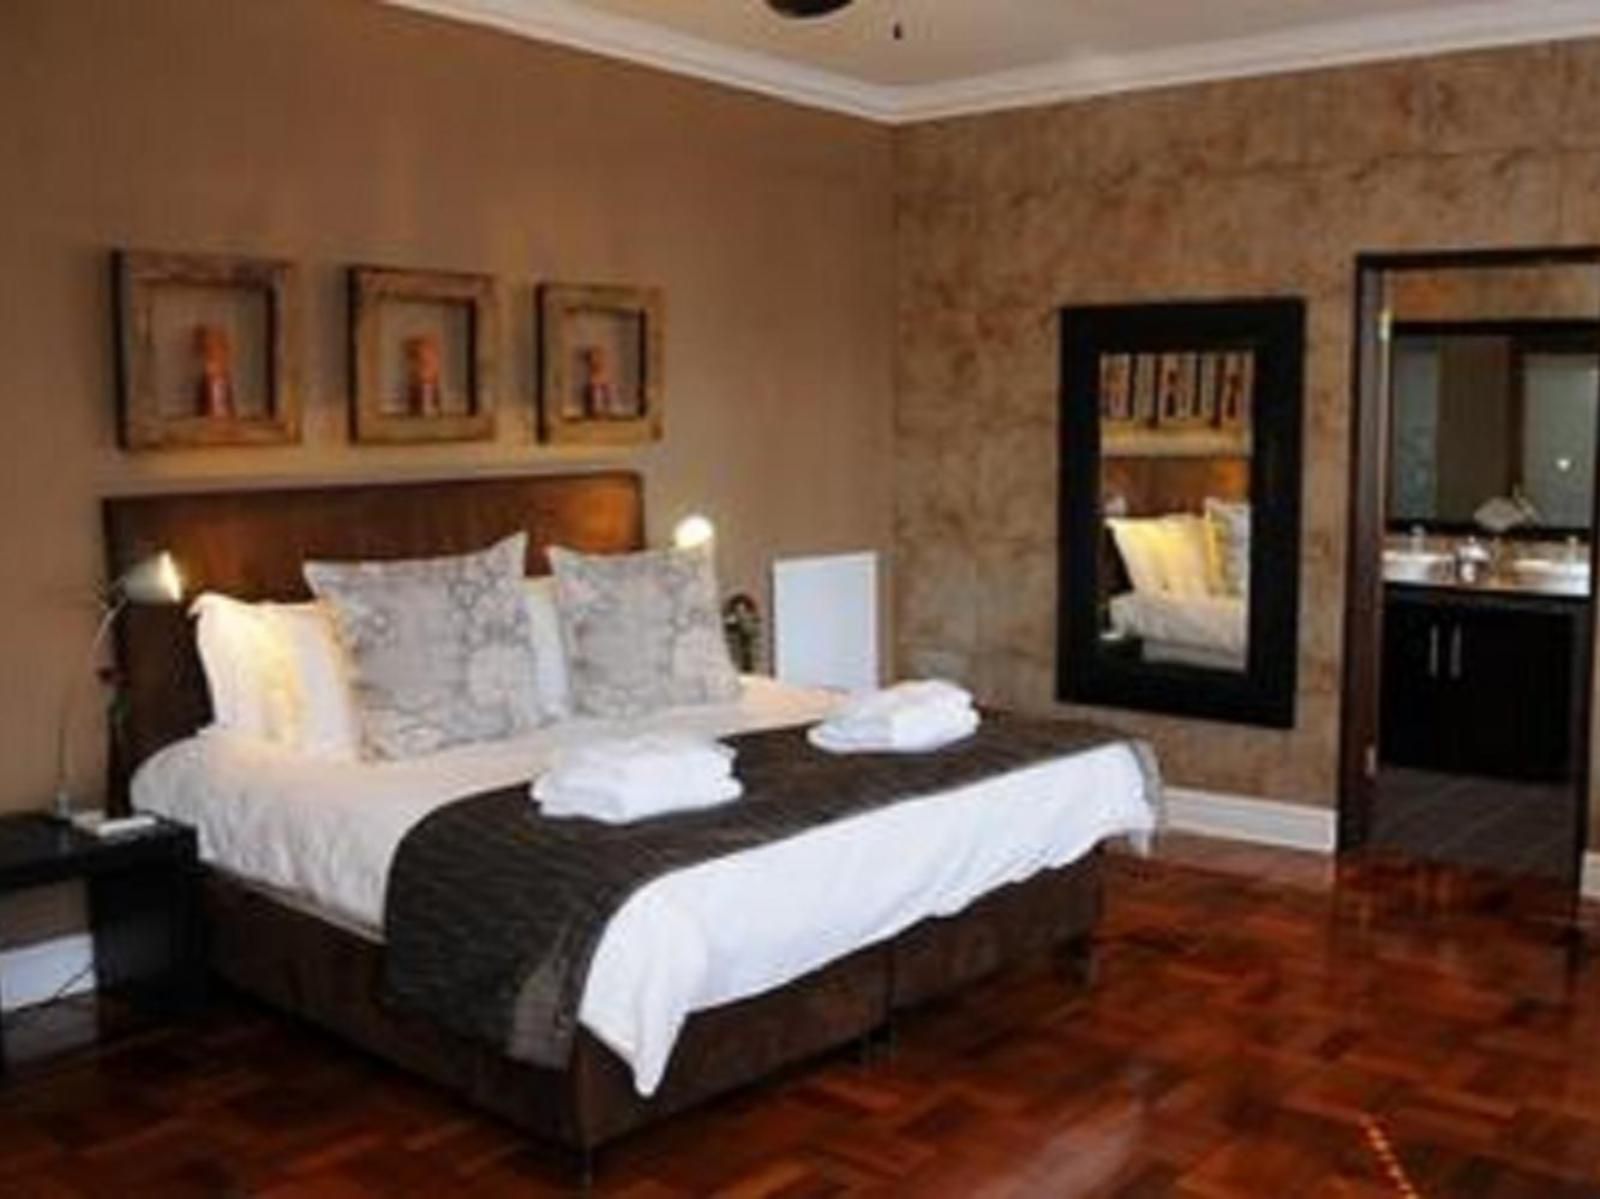 Manor 38 Summerstrand Port Elizabeth Eastern Cape South Africa Bedroom